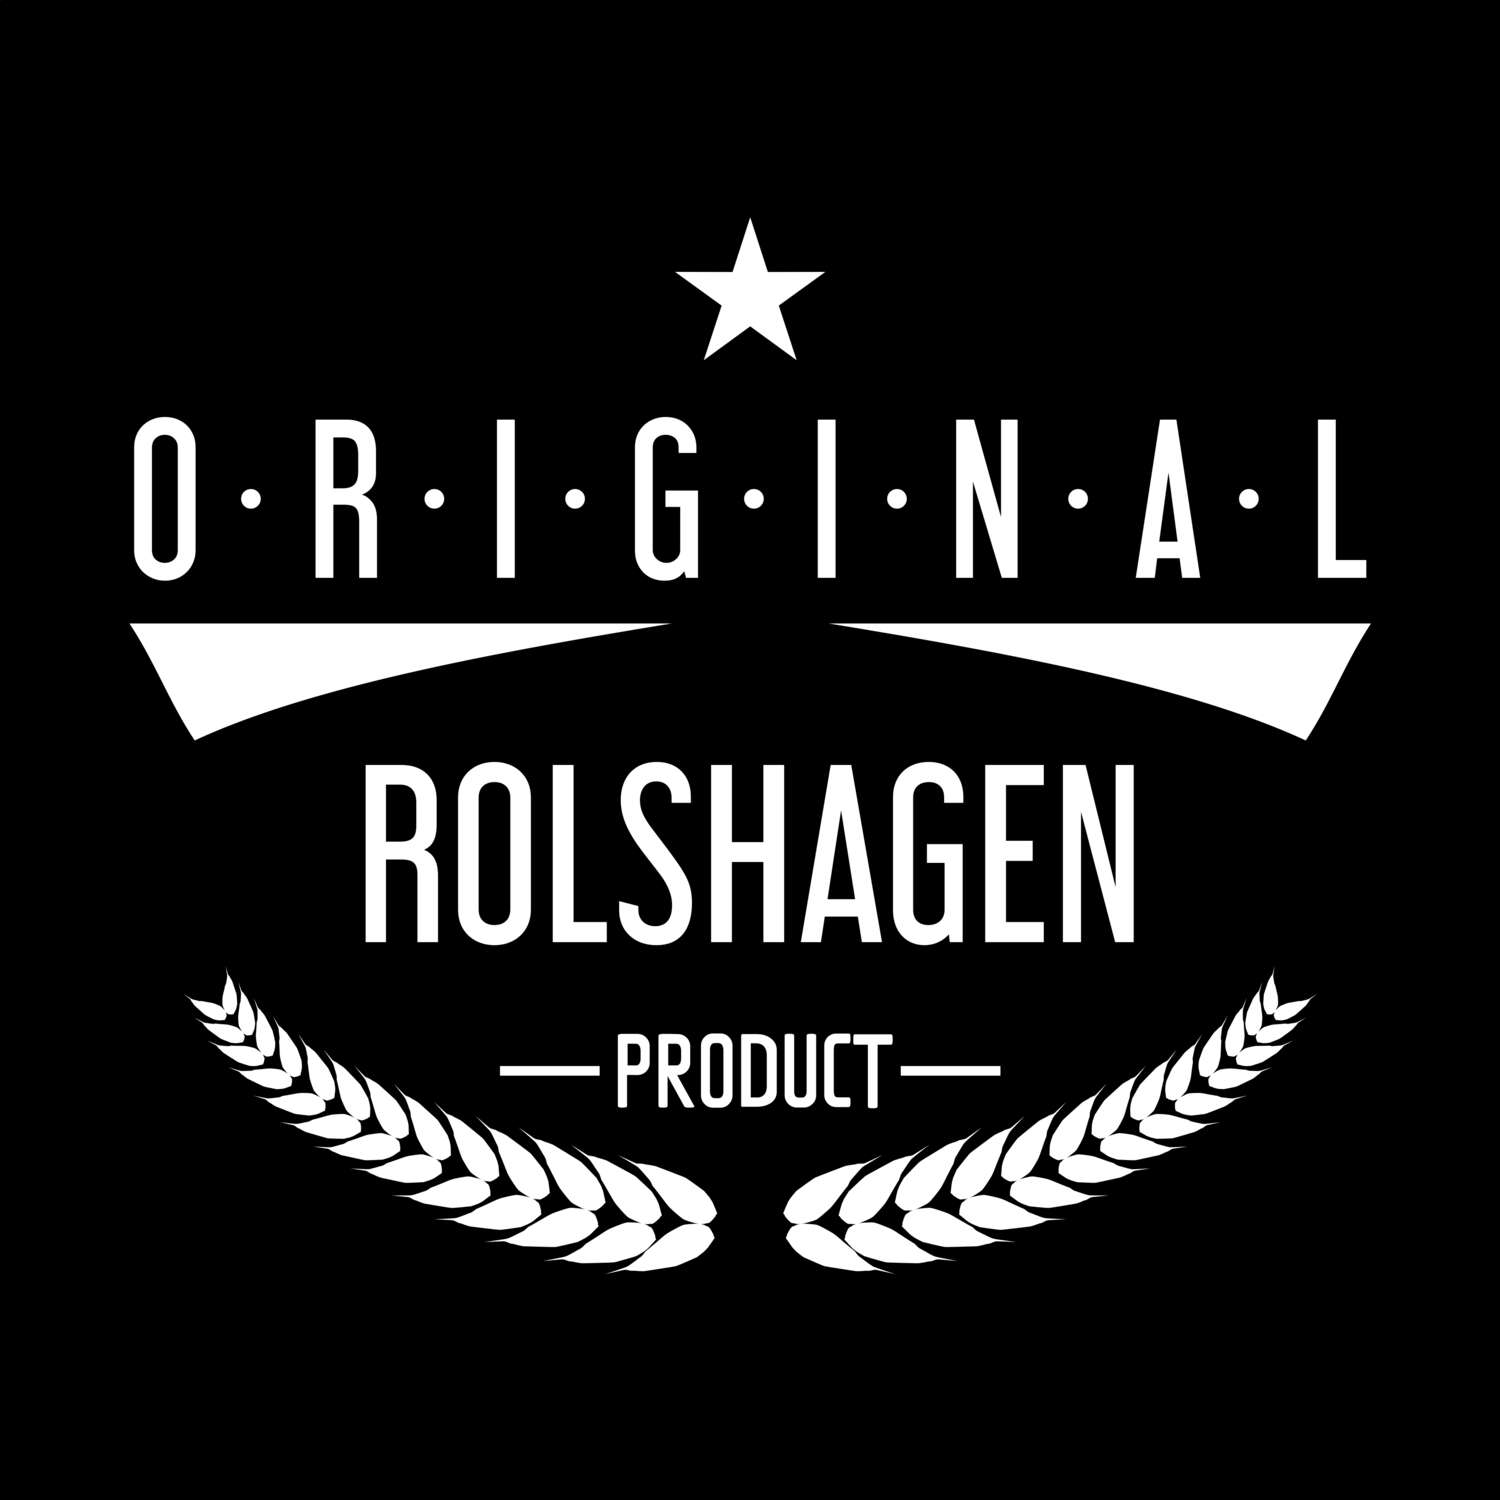 Rolshagen T-Shirt »Original Product«